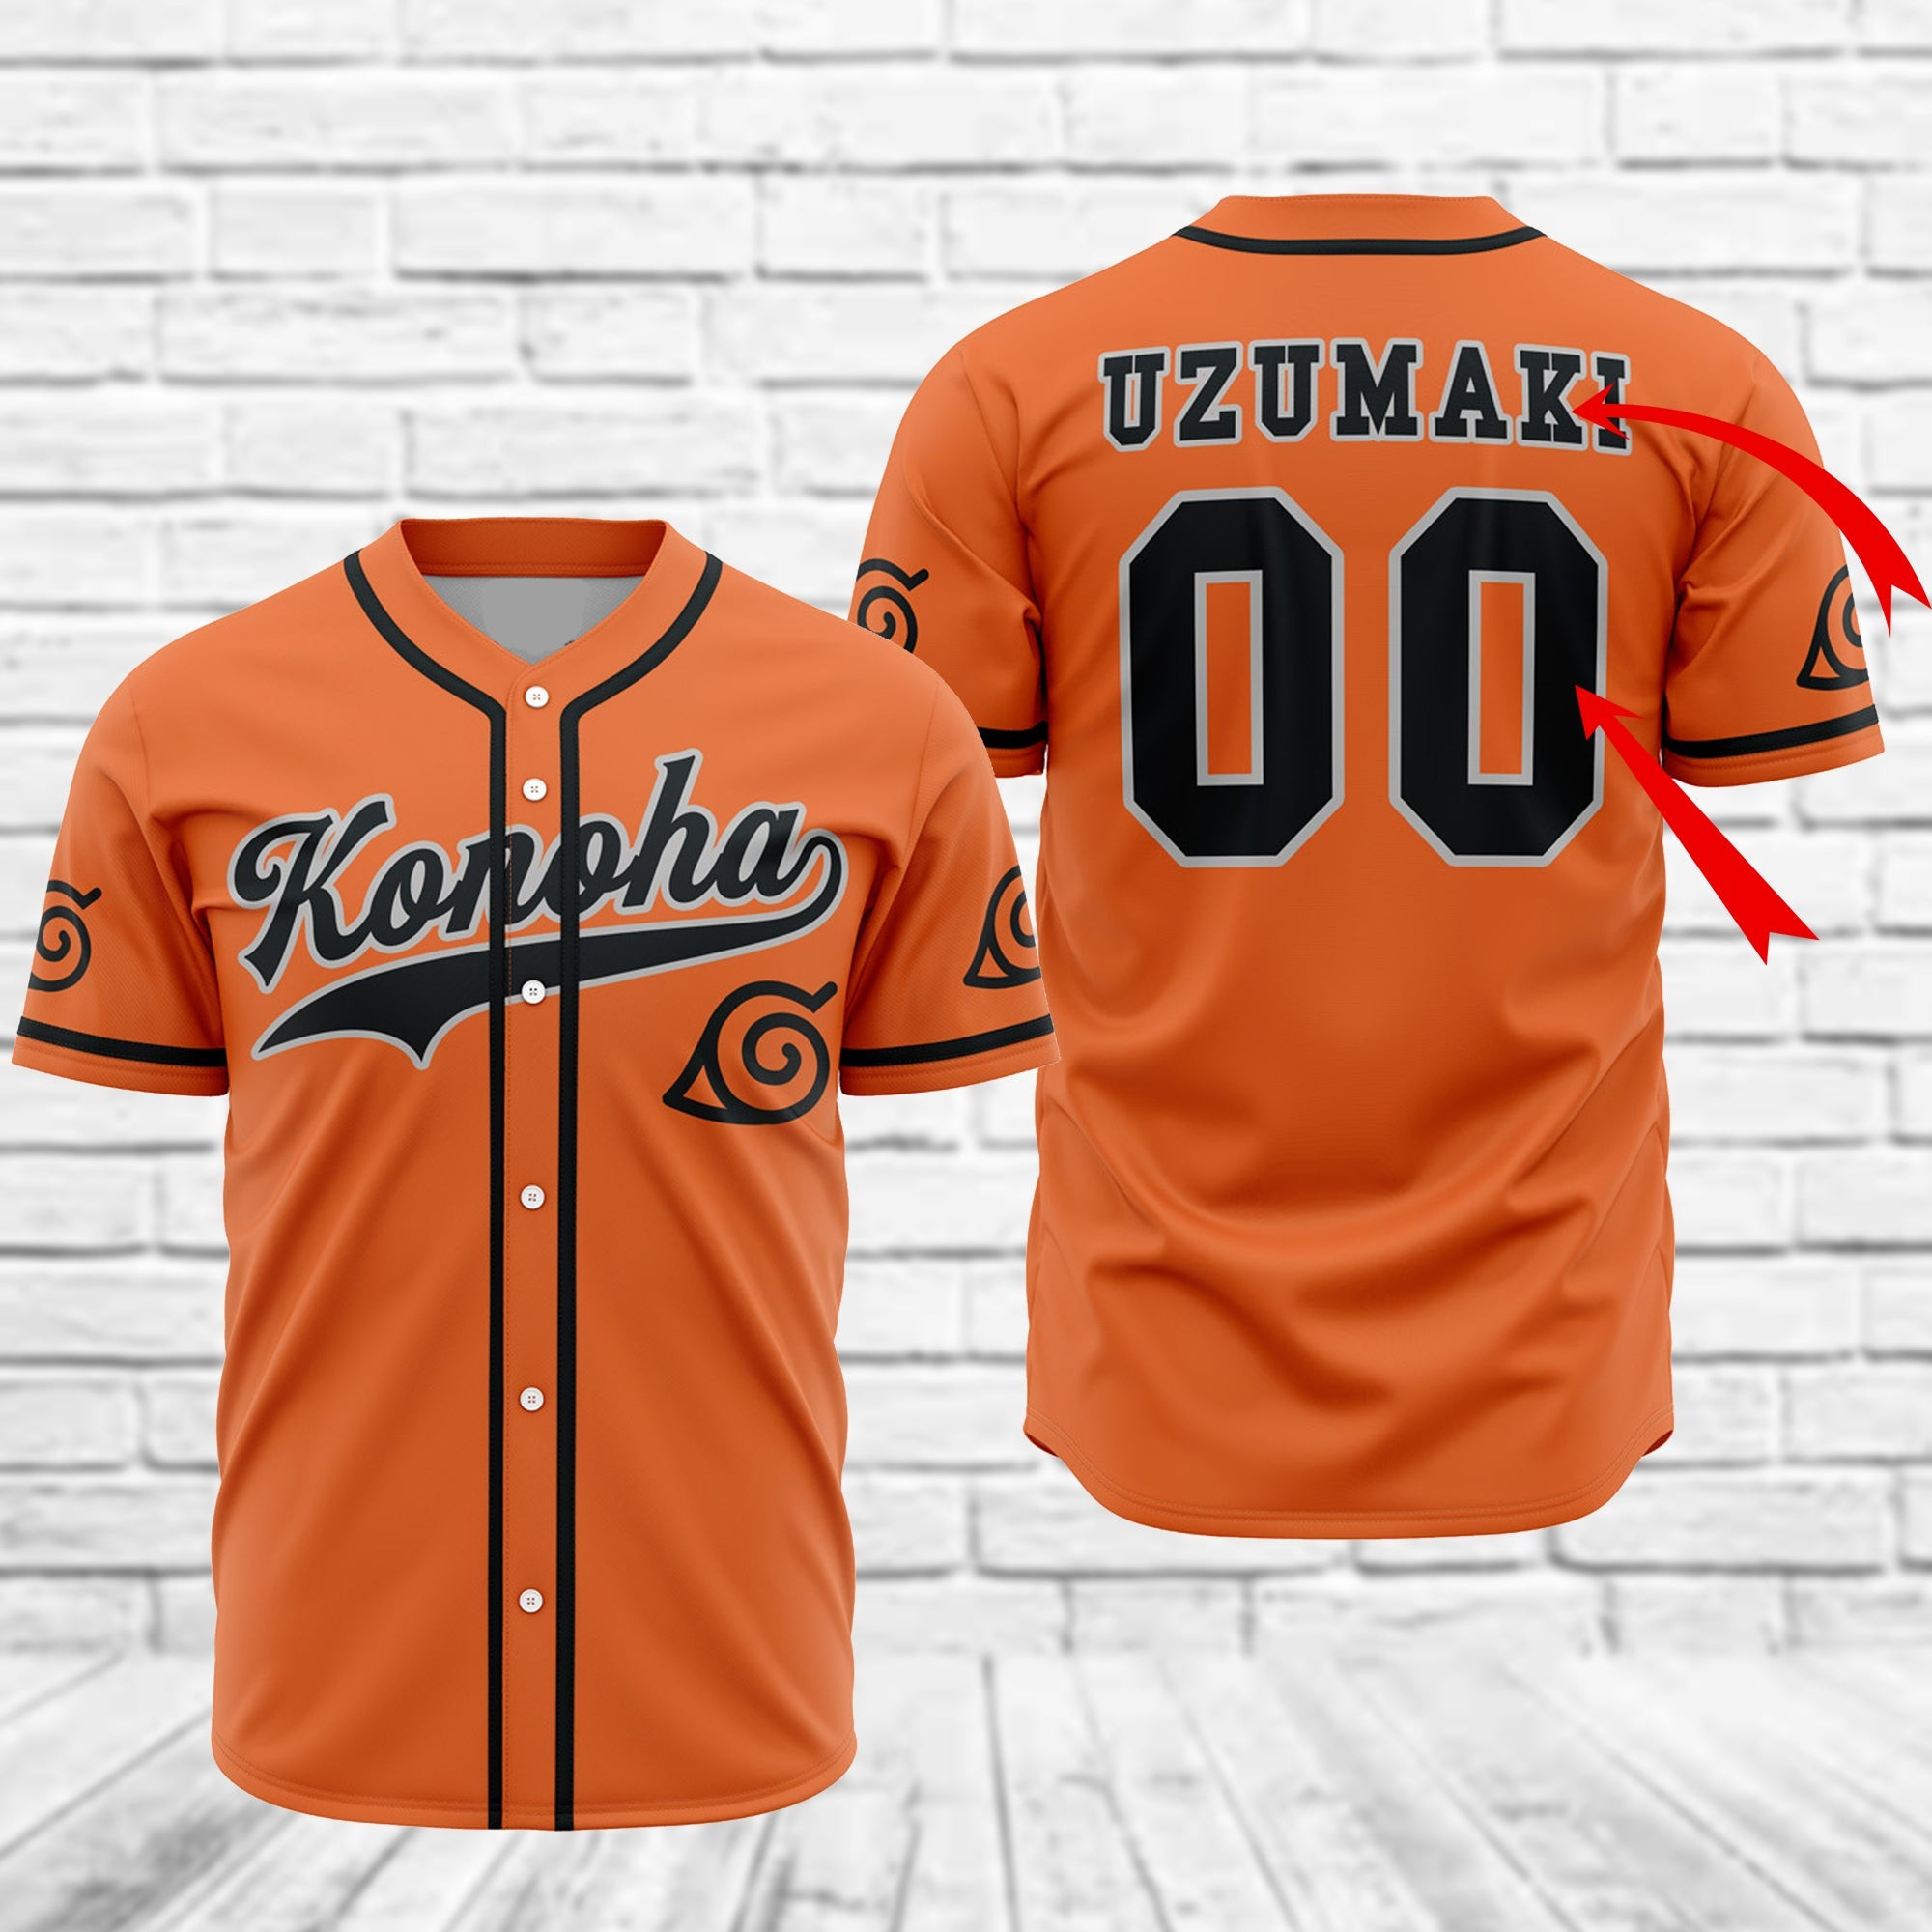 Personalized Naruto Konoha Uzumaki Baseball Jersey, Unisex Baseball Jersey for Men Women